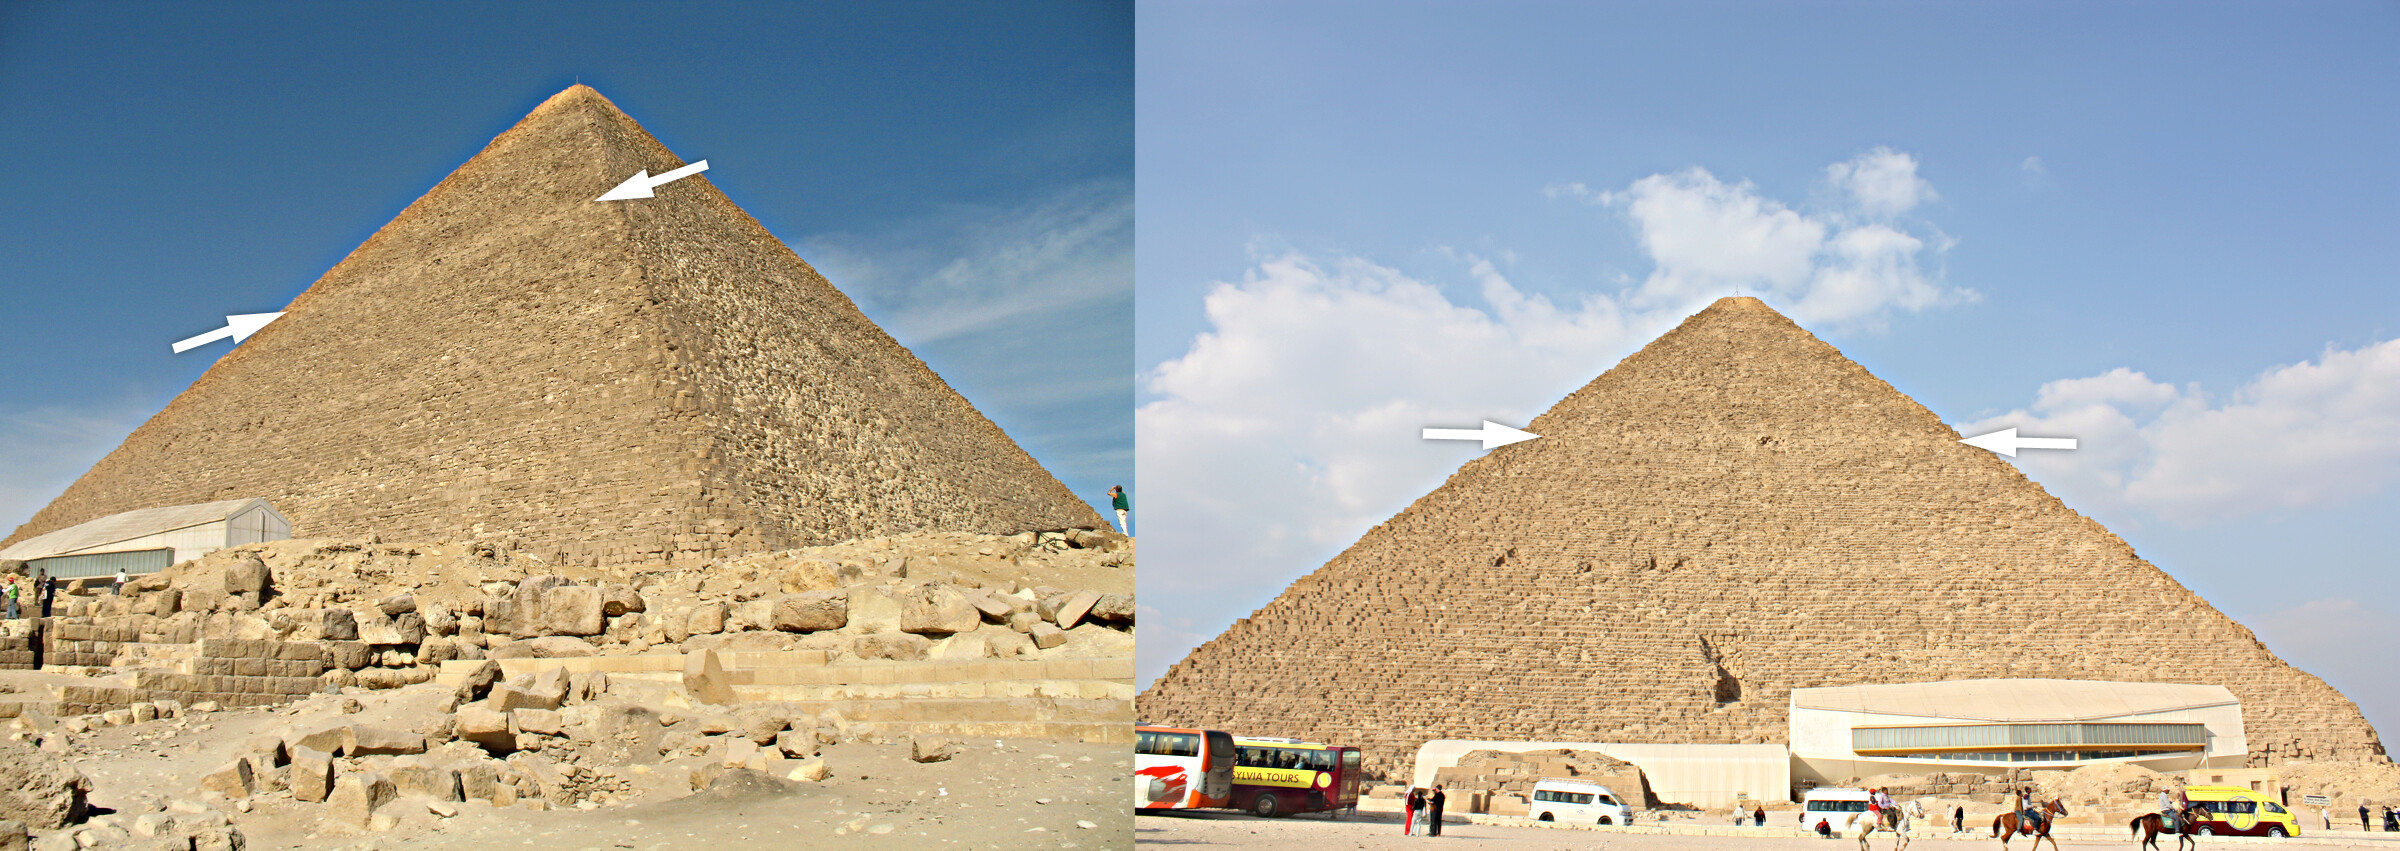 Pyramides de Gizeh : histoires de marchands de sable et réalité Trace_12